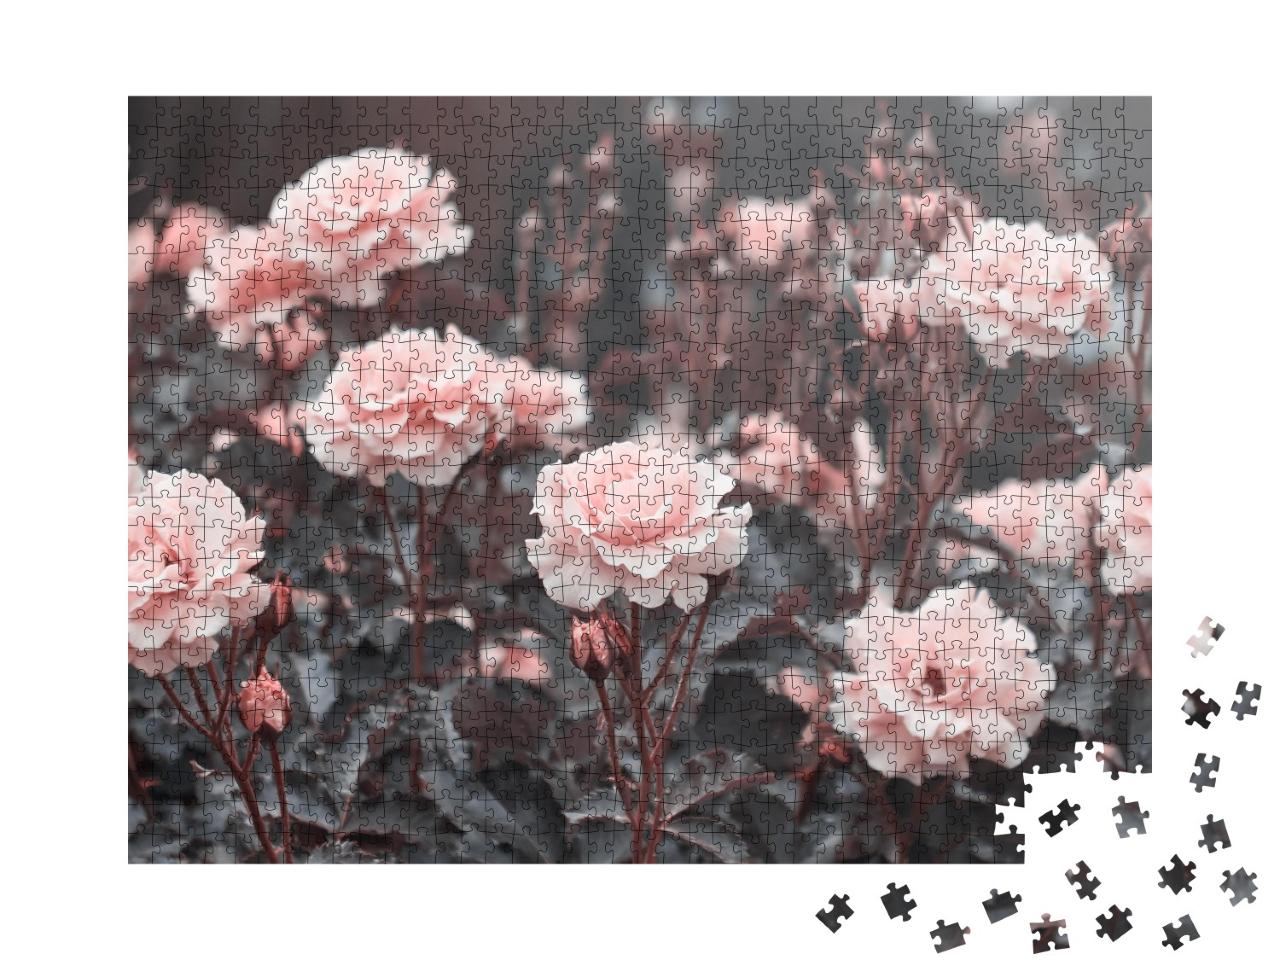 Puzzle de 1000 pièces « Des roses roses délicates dans le jardin »